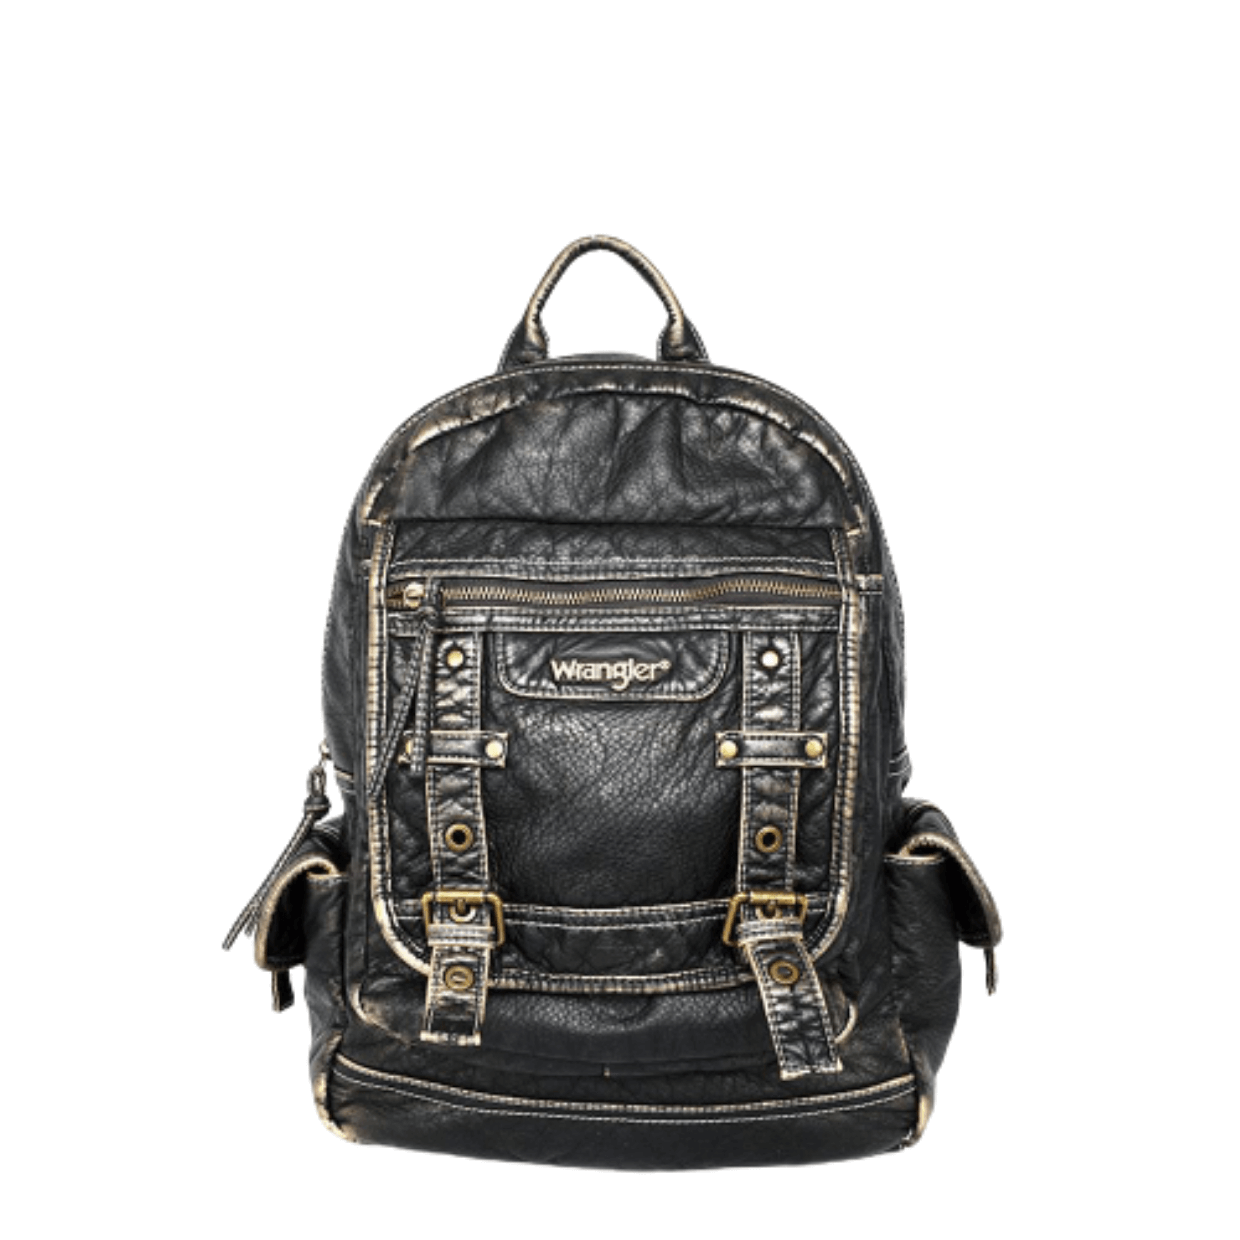 WG23-9110 BZ- Wrangler backpack- Bronze